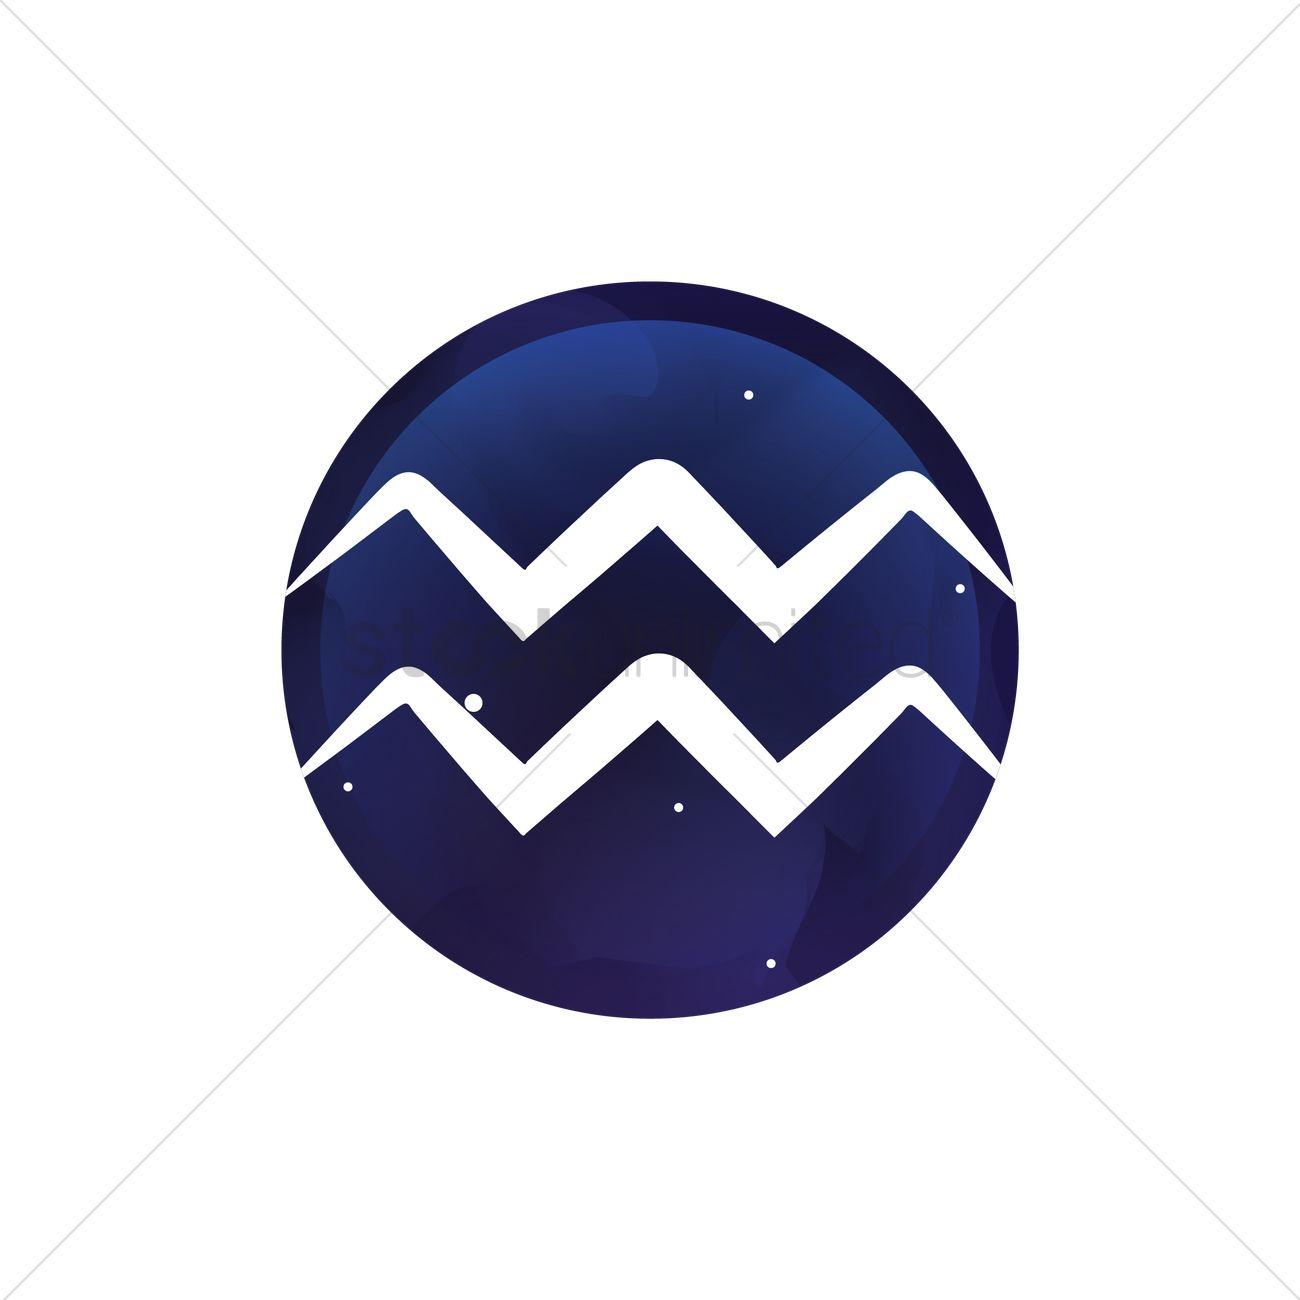 Aquarius Logo - Aquarius symbol Vector Image - 1988804 | StockUnlimited